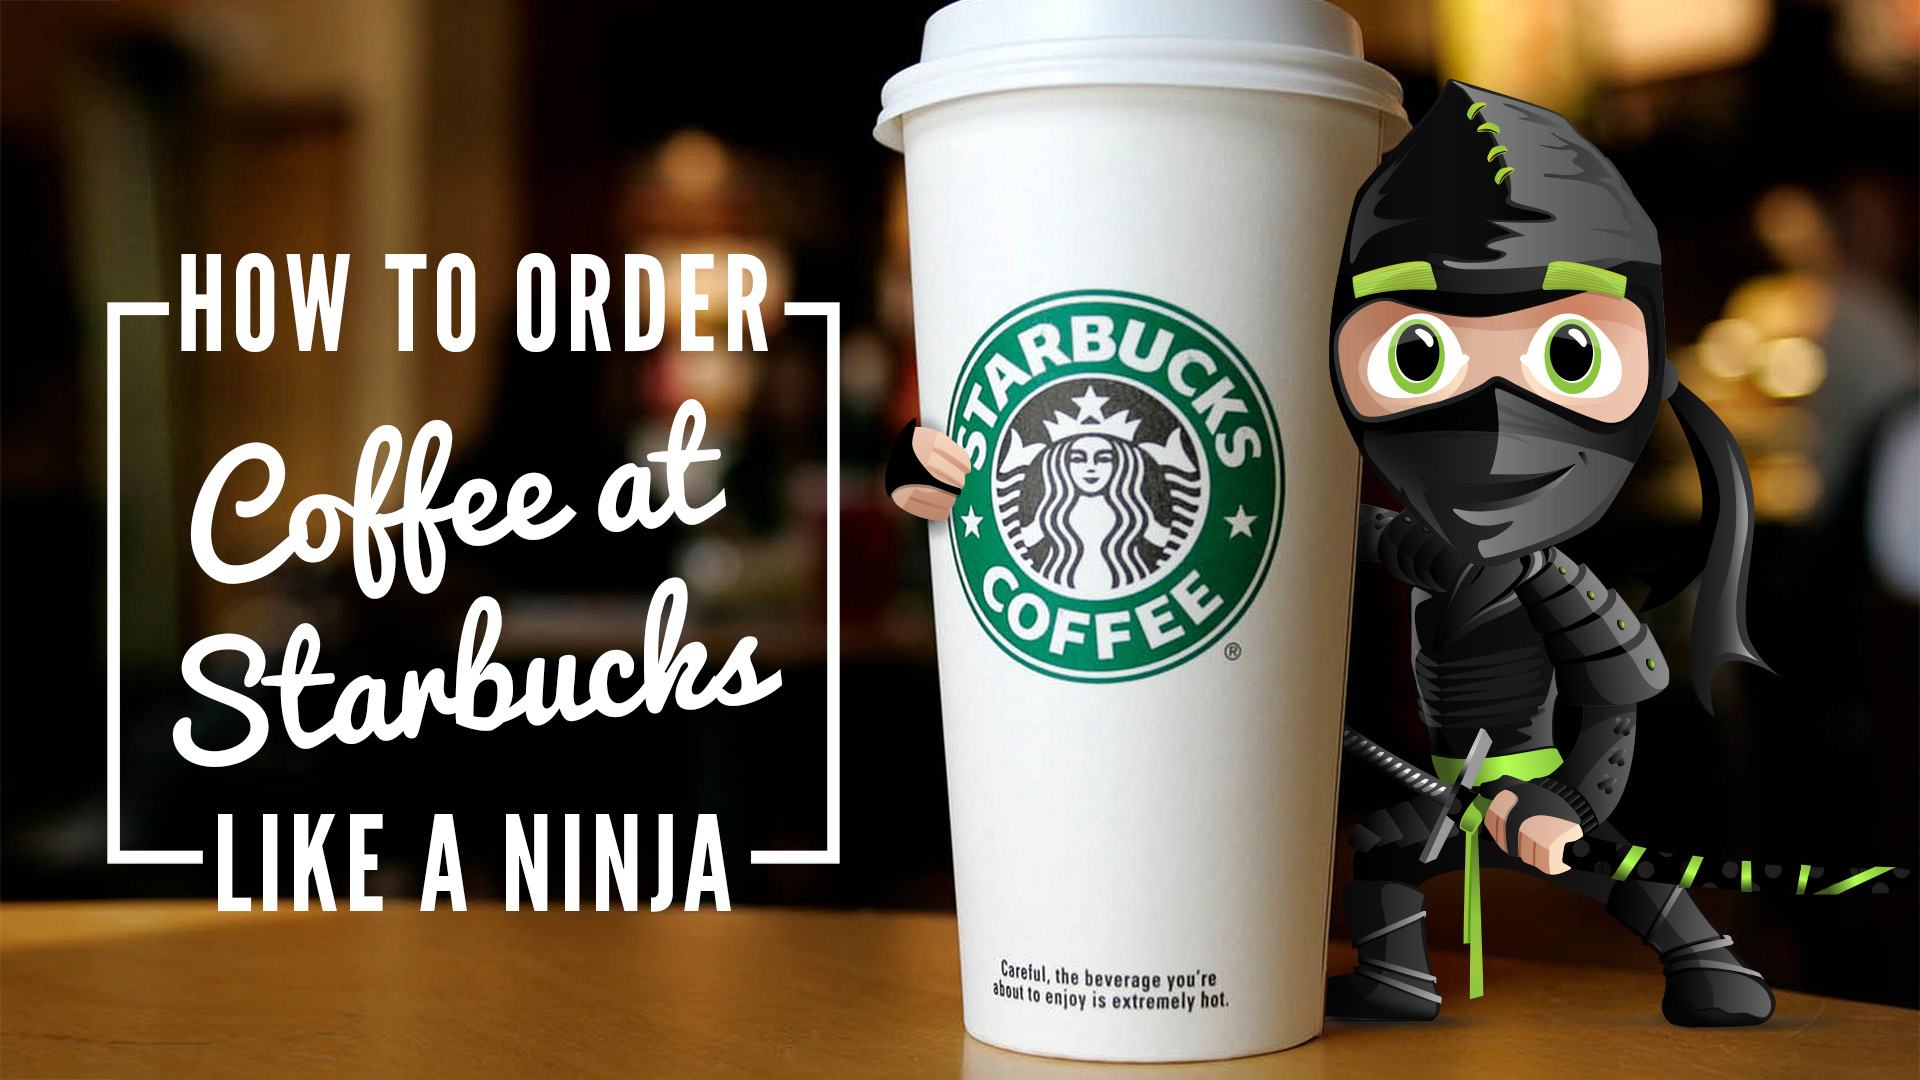 Nadzvučna brzina bakar Obod  Kako naručiti kafu sa vrhnjem u Starbucksu?